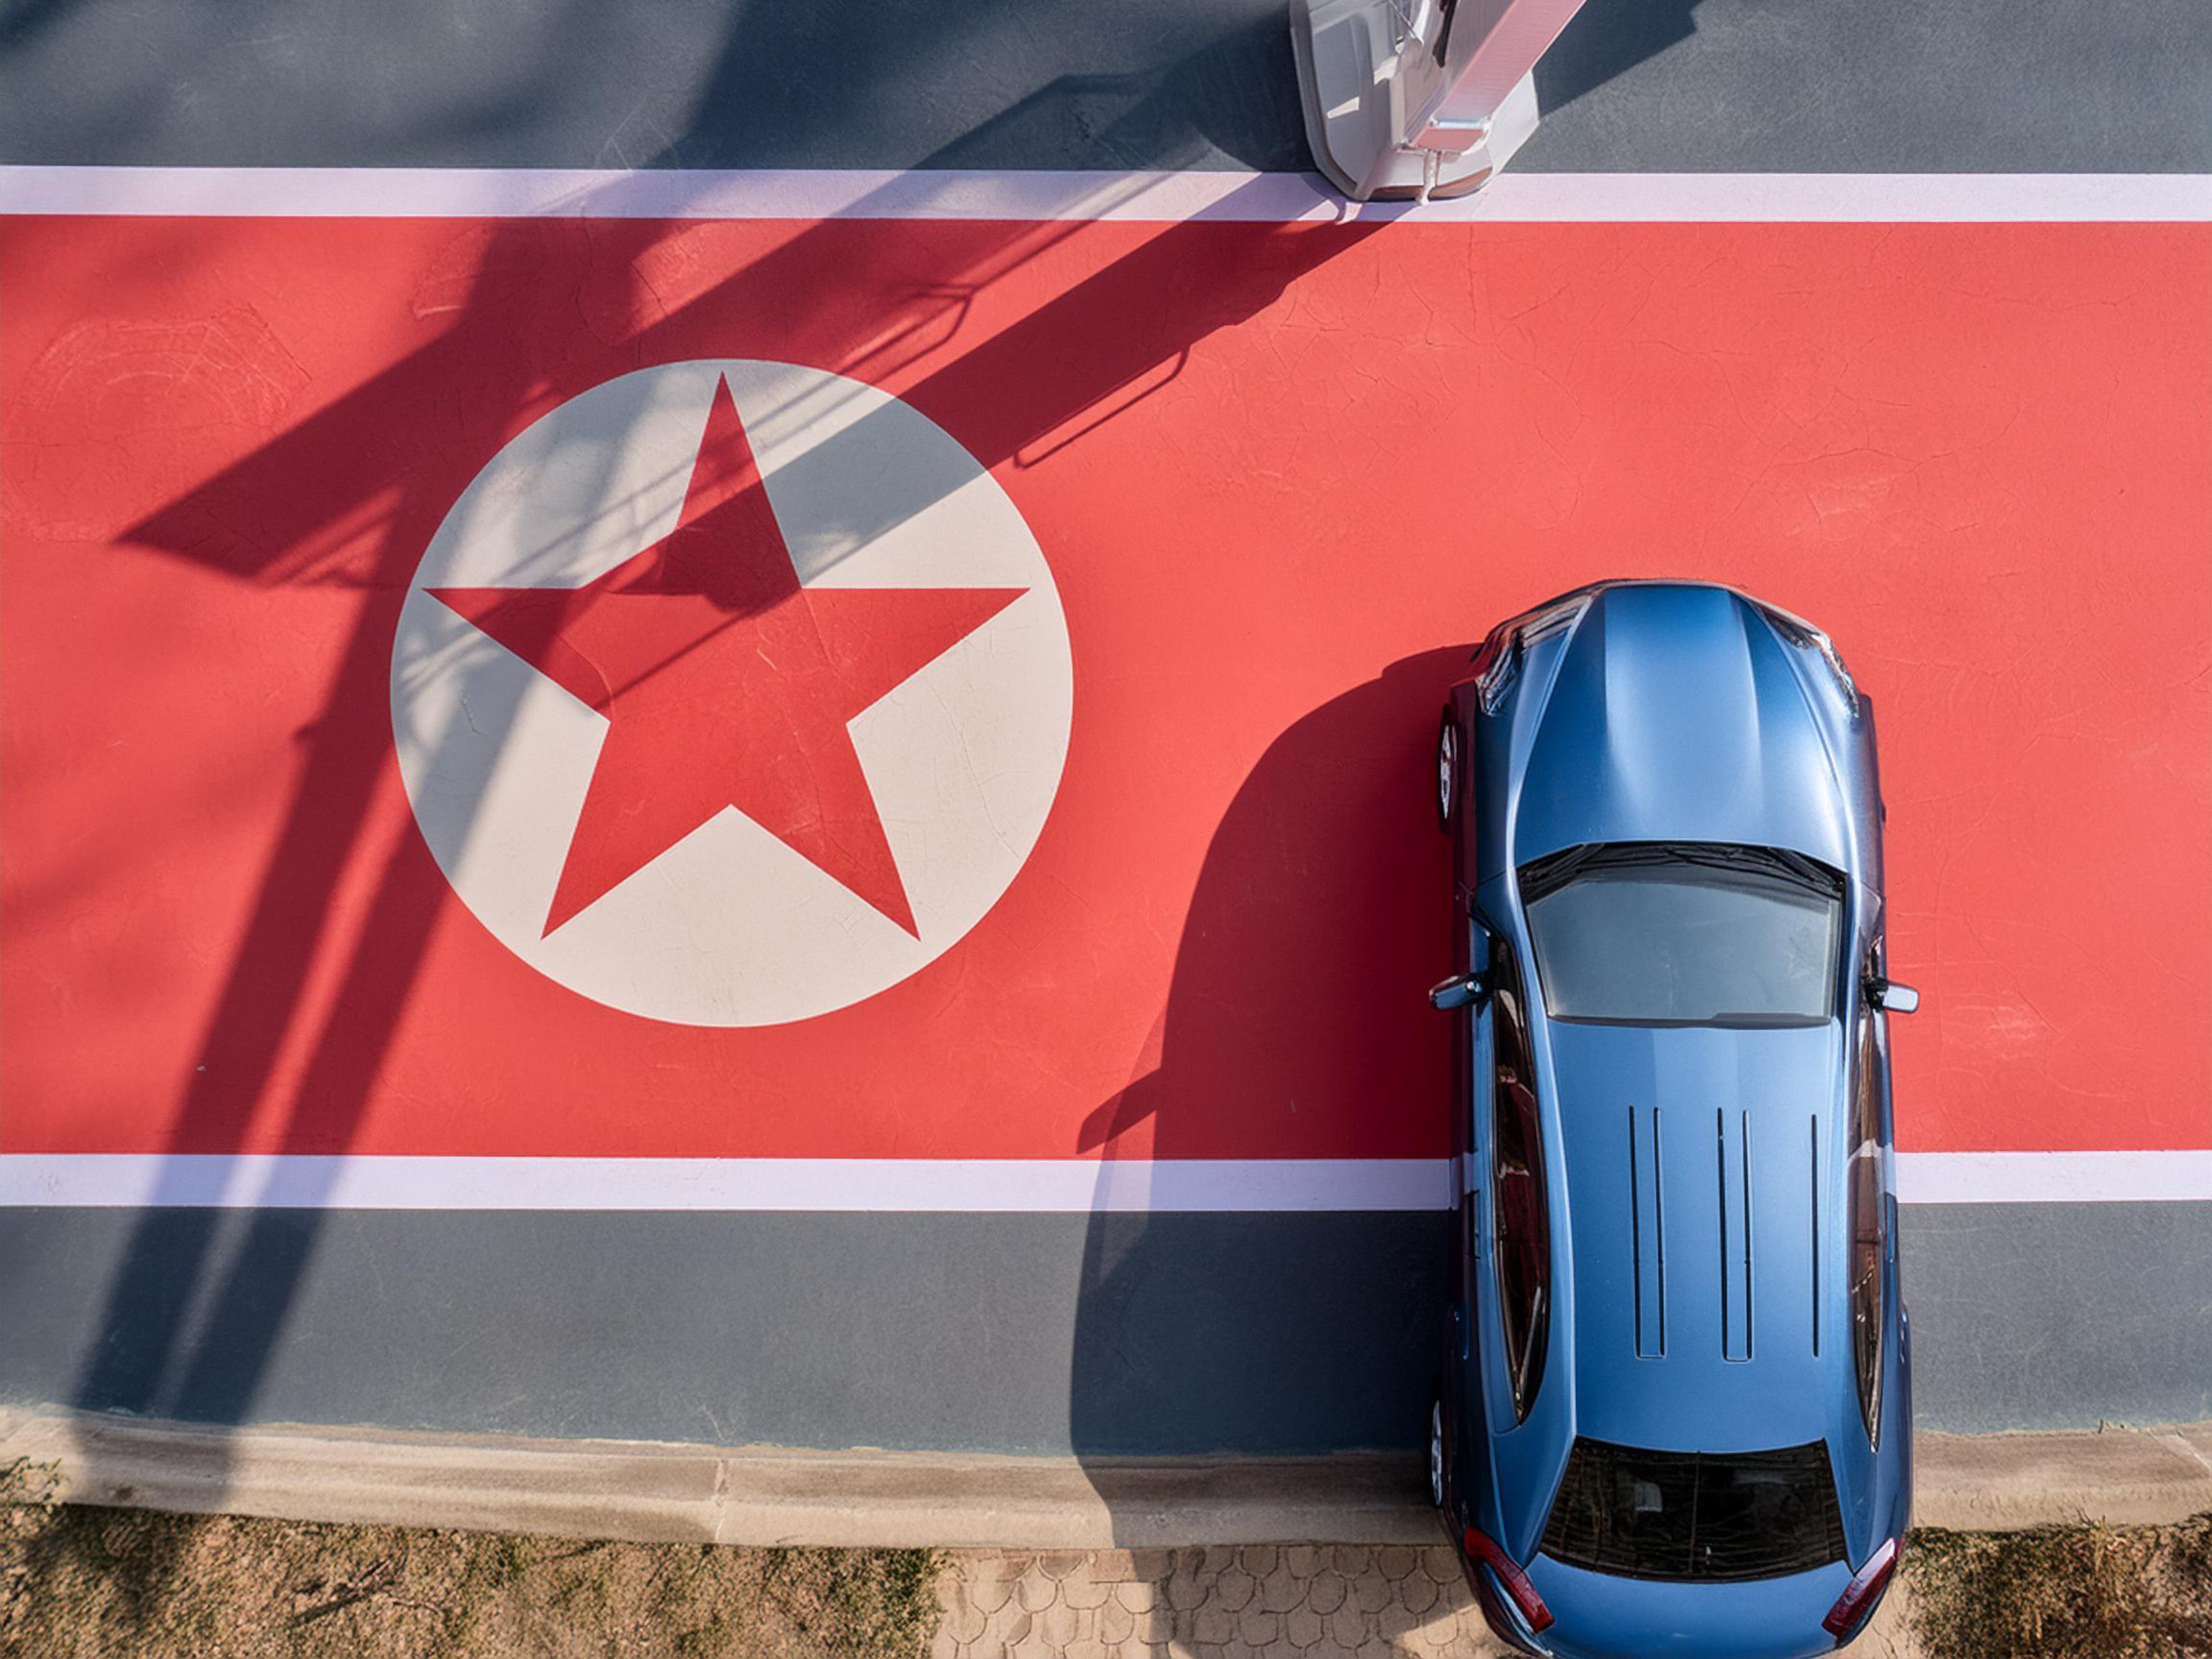 #Nordkorea zeigt erstes E-Auto, doch etwas stimmt nicht